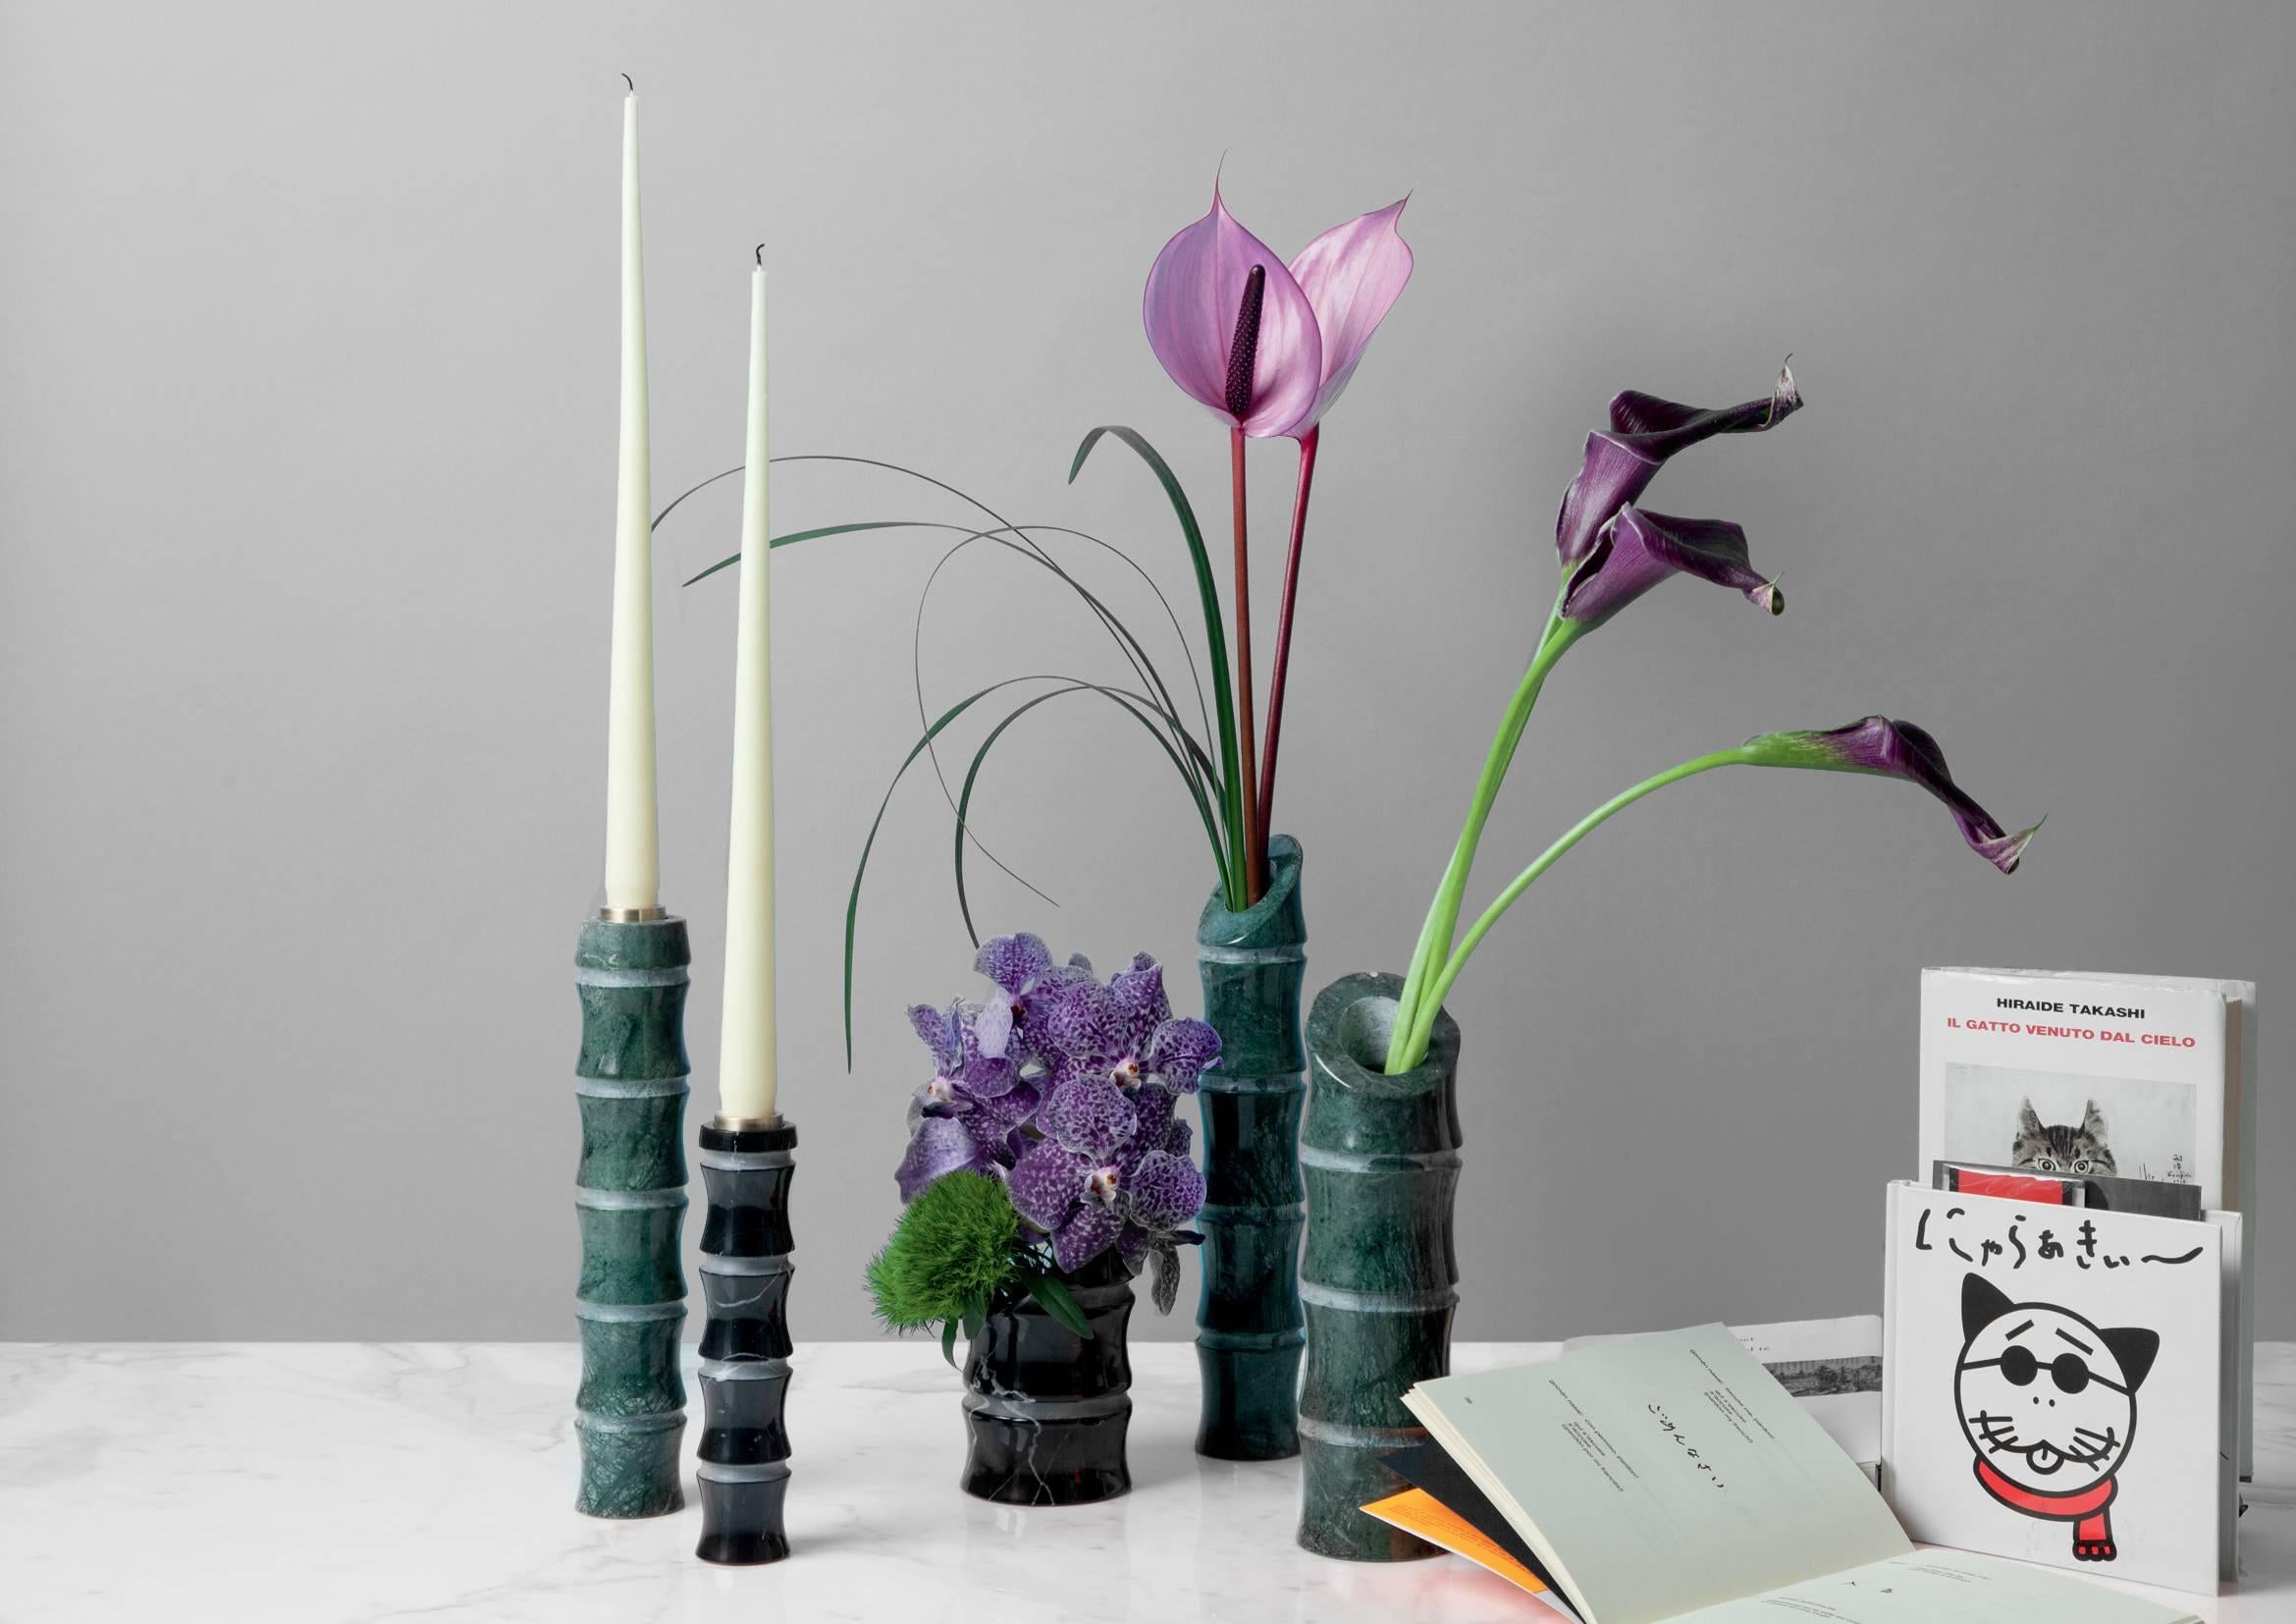 Eine Zickzacklinie definiert die illusorische Grenze zwischen Kunst und Design. Chiossi kreiert eine Kollektion von Vasen und Kerzenhaltern, die von der Natur und den harmonischen Formen des Bambus inspiriert sind, dünn und kratzfest. Größe: 5 x 27